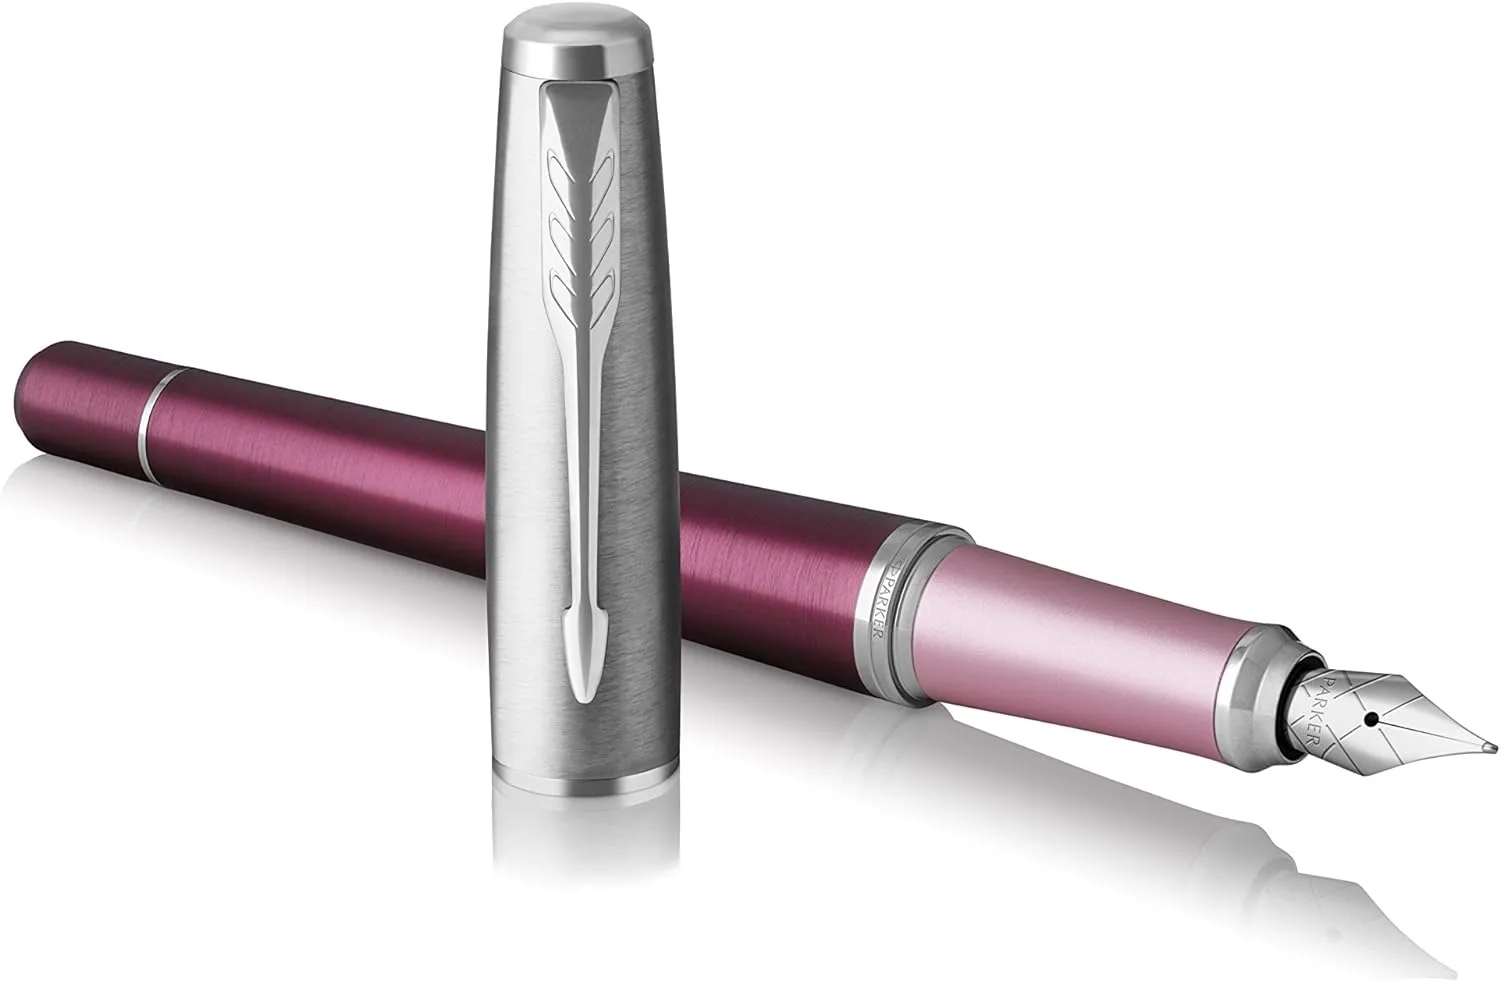 خودنویس پارکر مدل اربن زرشکی گیره استیل - Parker Urban Fountain Pen Premium Dark Purple